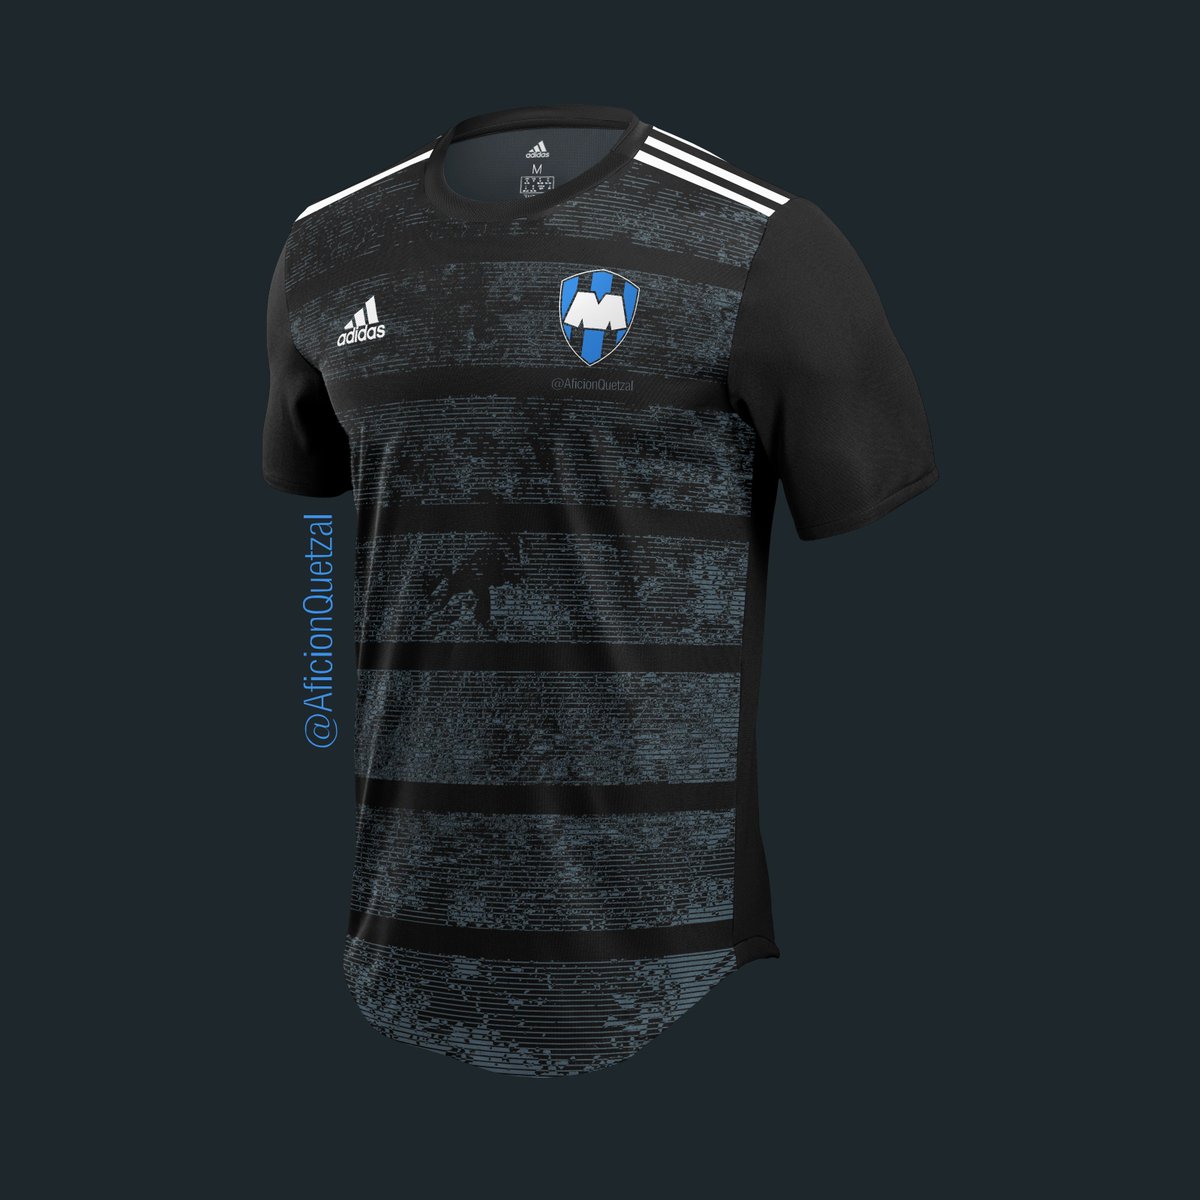 Afición || AQ on Twitter: "@Rayados x Adidas Inspirada en la nueva camisa de la Selección Mexicana La se inspira en el acero y su proceso de oxidación #